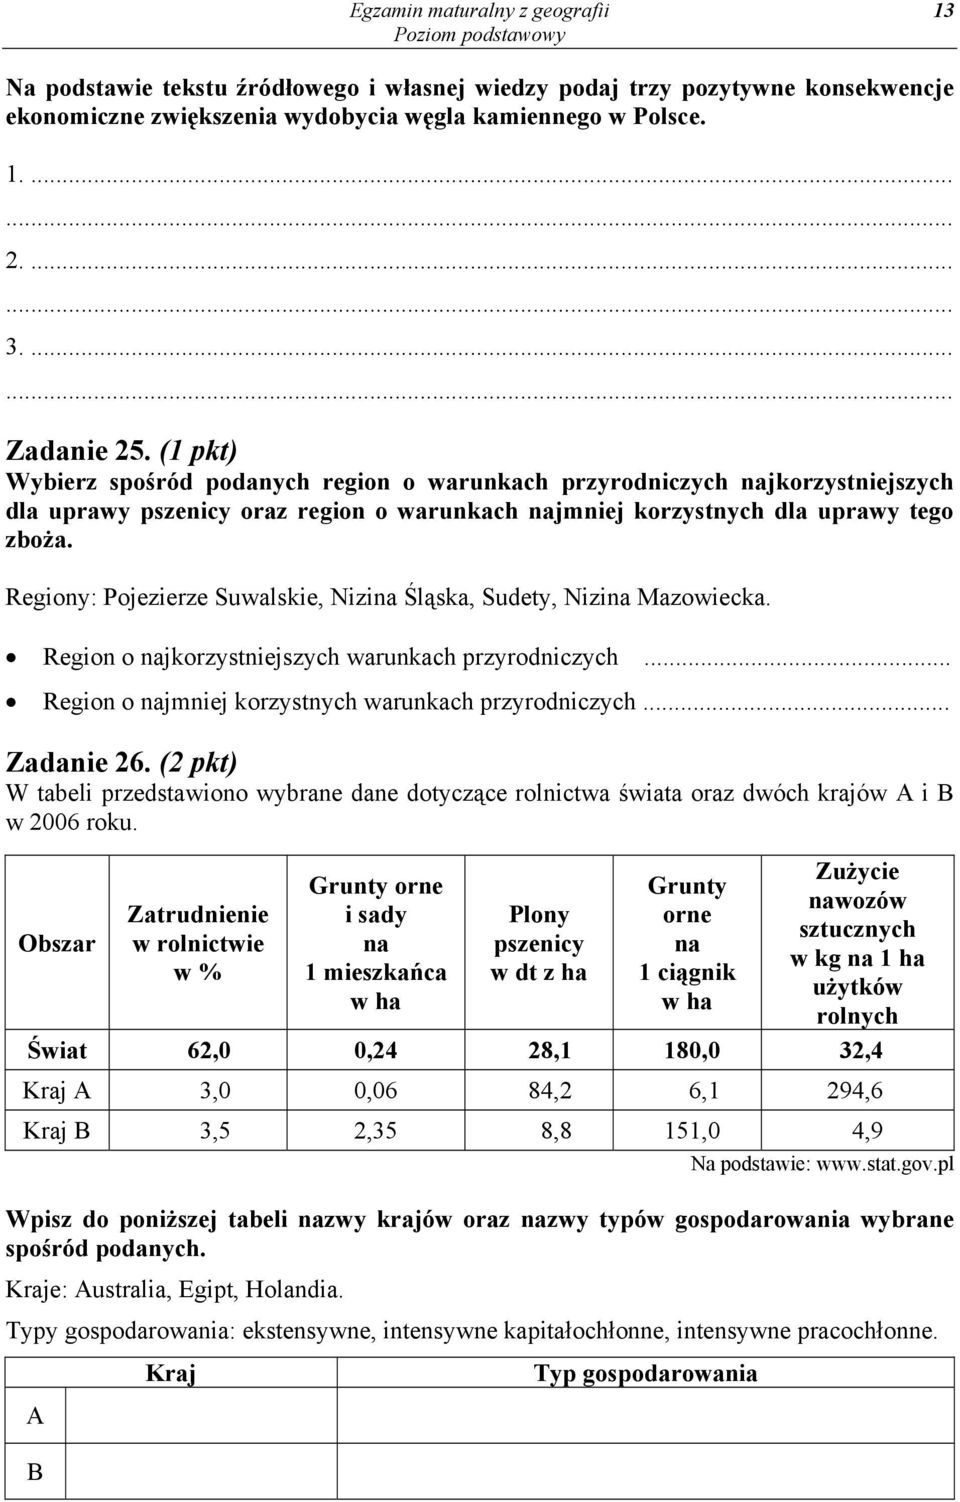 Regiony: Pojezierze Suwalskie, Nizina Śląska, Sudety, Nizina Mazowiecka. Region o najkorzystniejszych warunkach przyrodniczych... Region o najmniej korzystnych warunkach przyrodniczych... Zadanie 26.